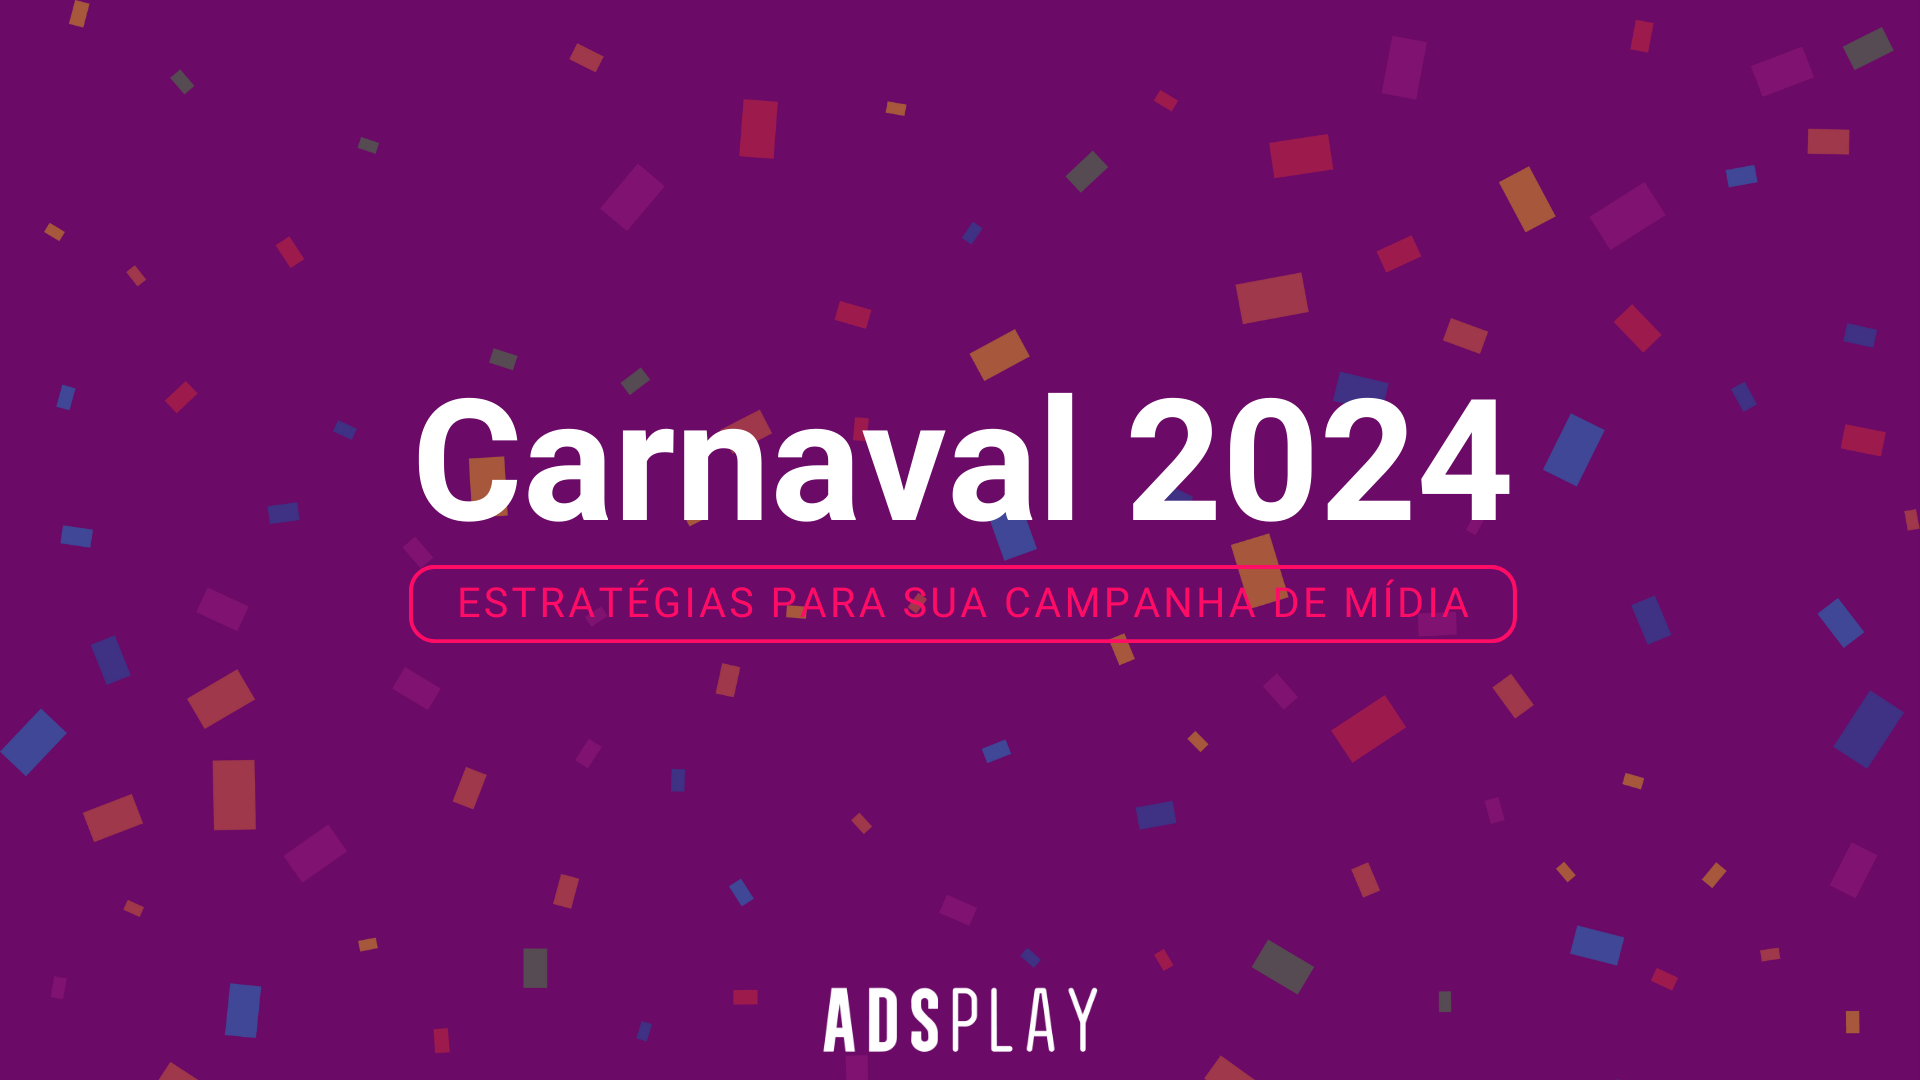 Carnaval 2024: Estratégias para sua campanha de mídia